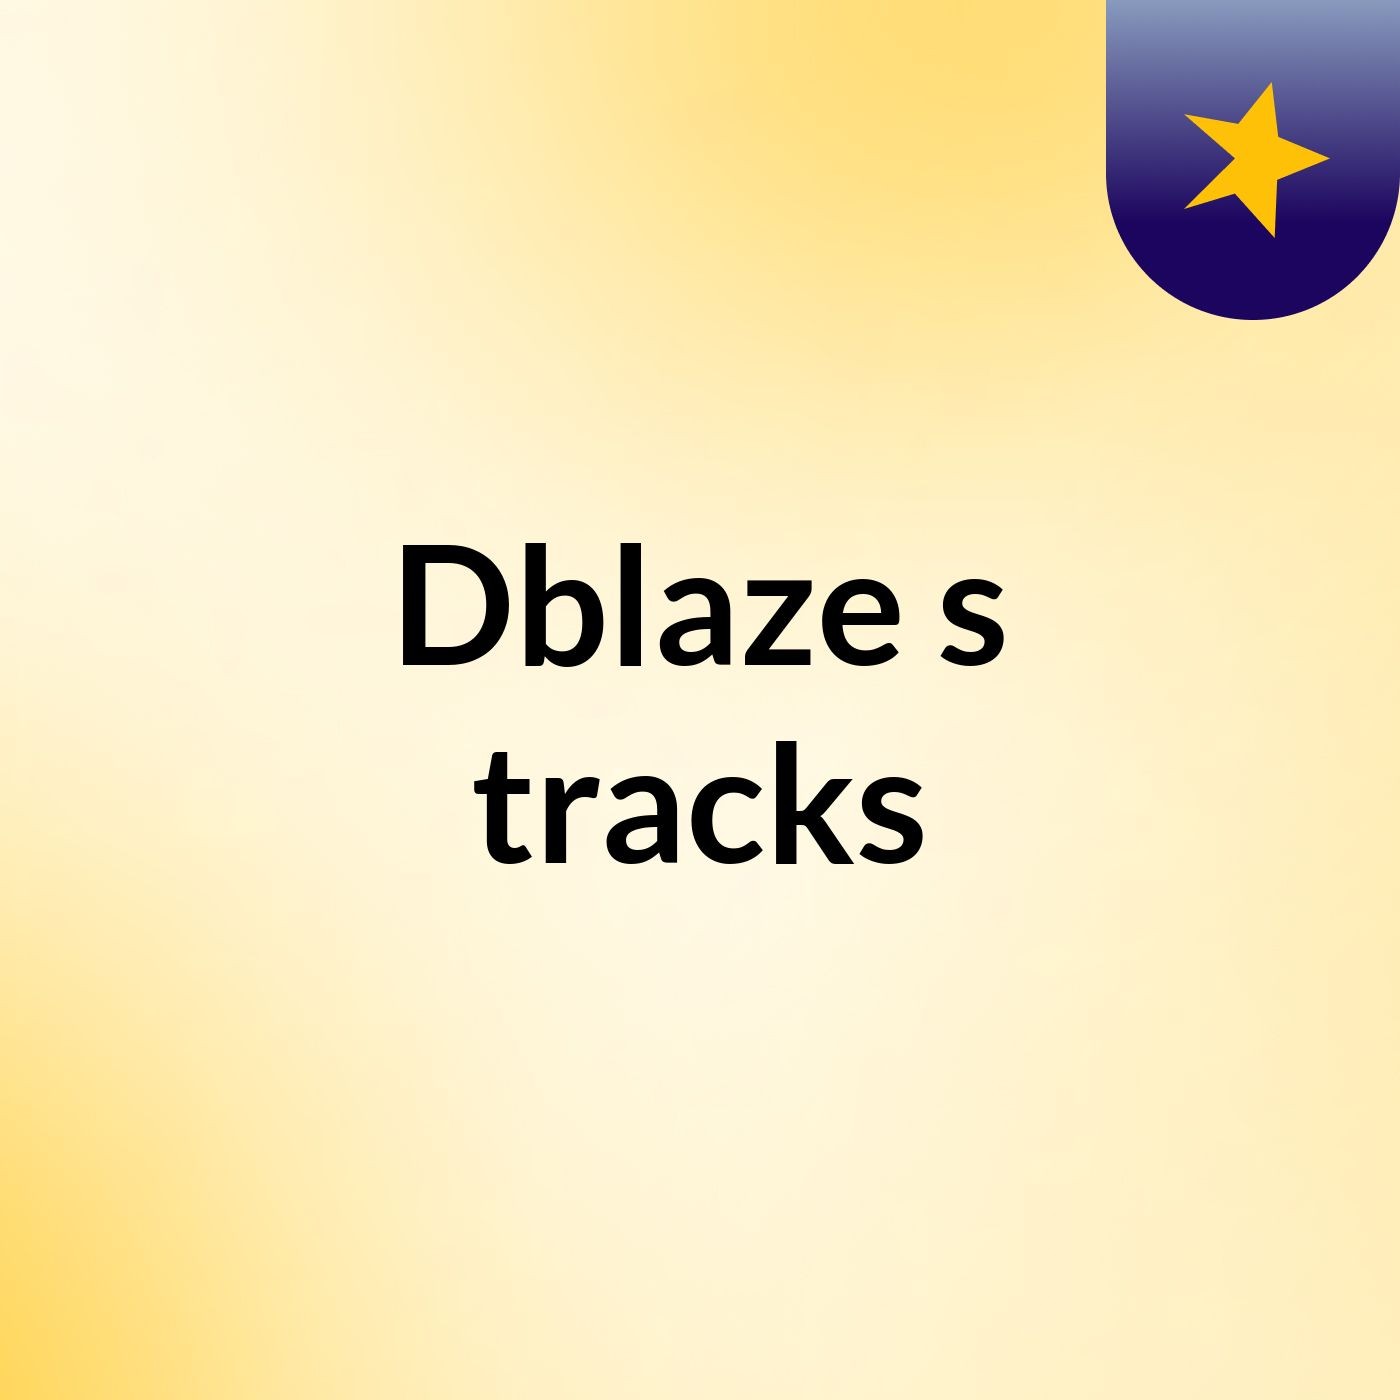 Dblaze's tracks